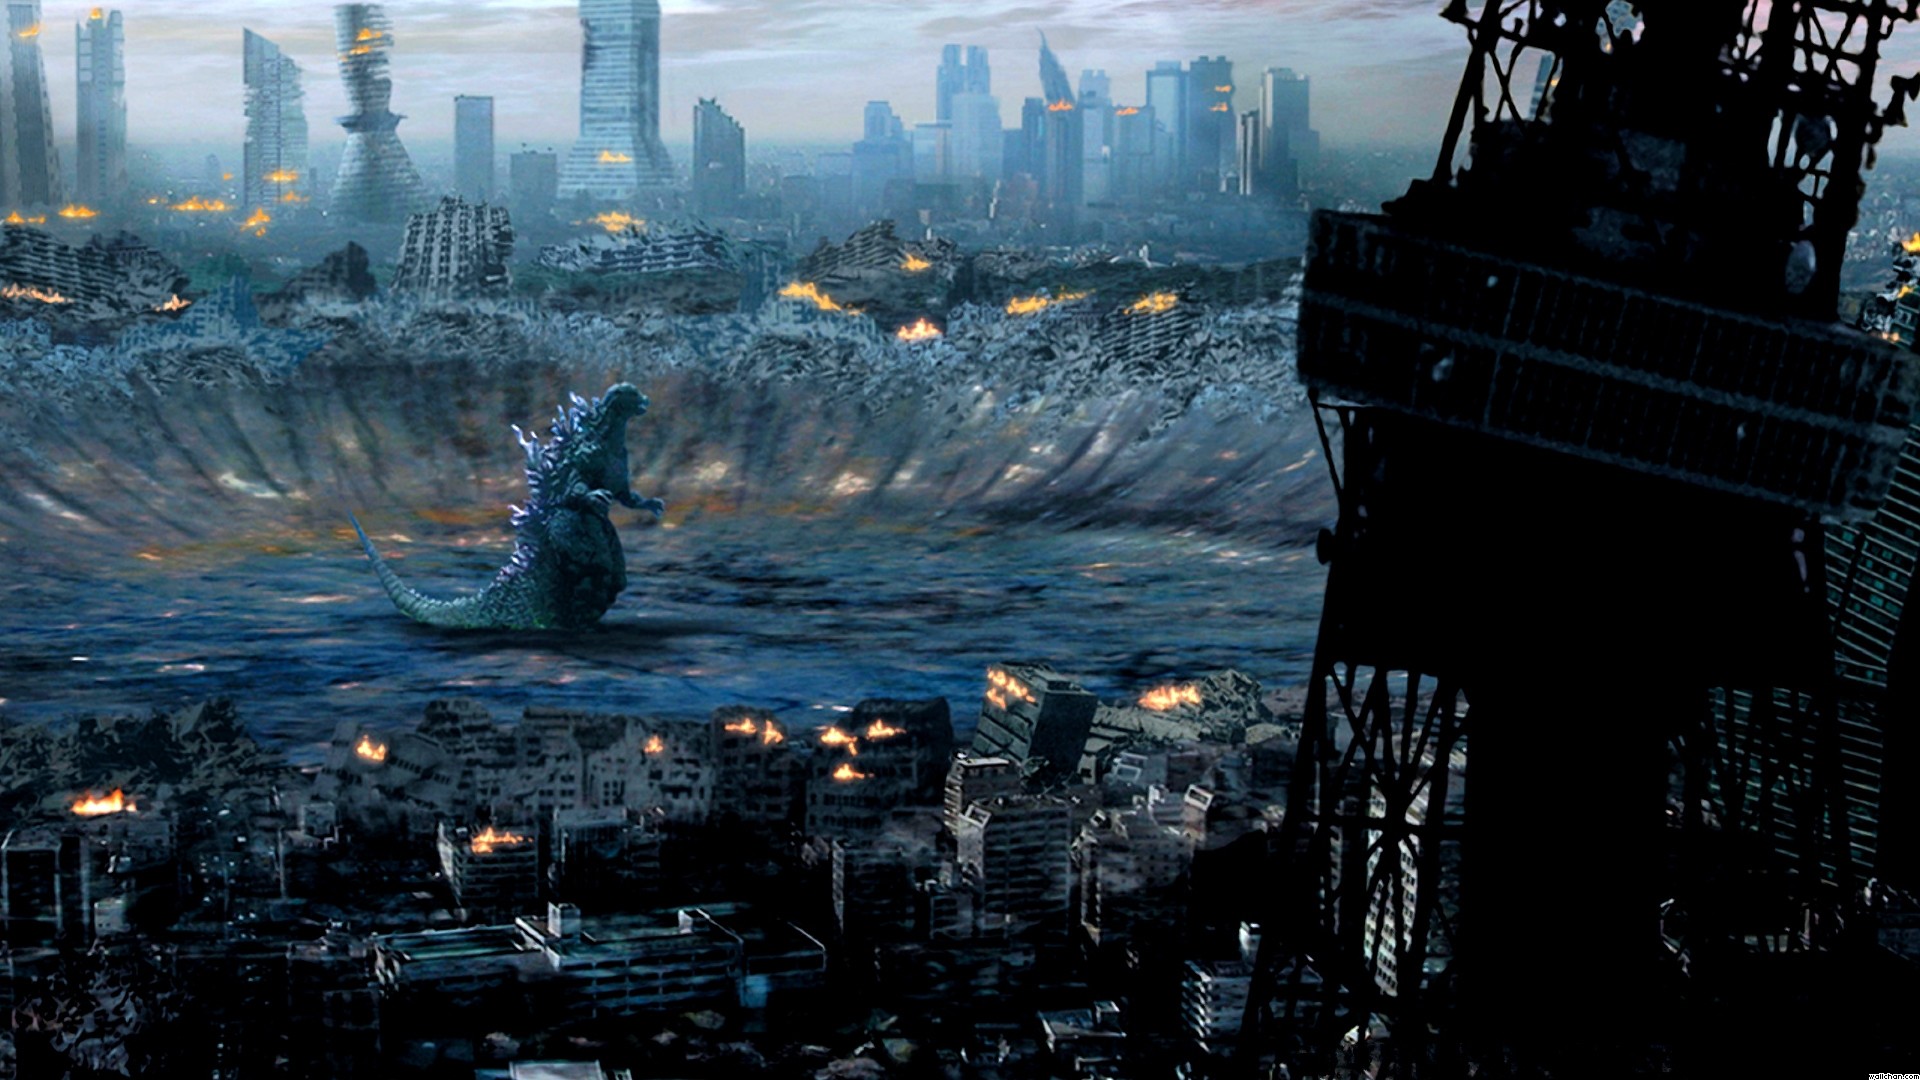 1920x1080 Godzilla HD Wallpaper | Hintergrund |  | ID:445812 - Wallpaper  Abyss